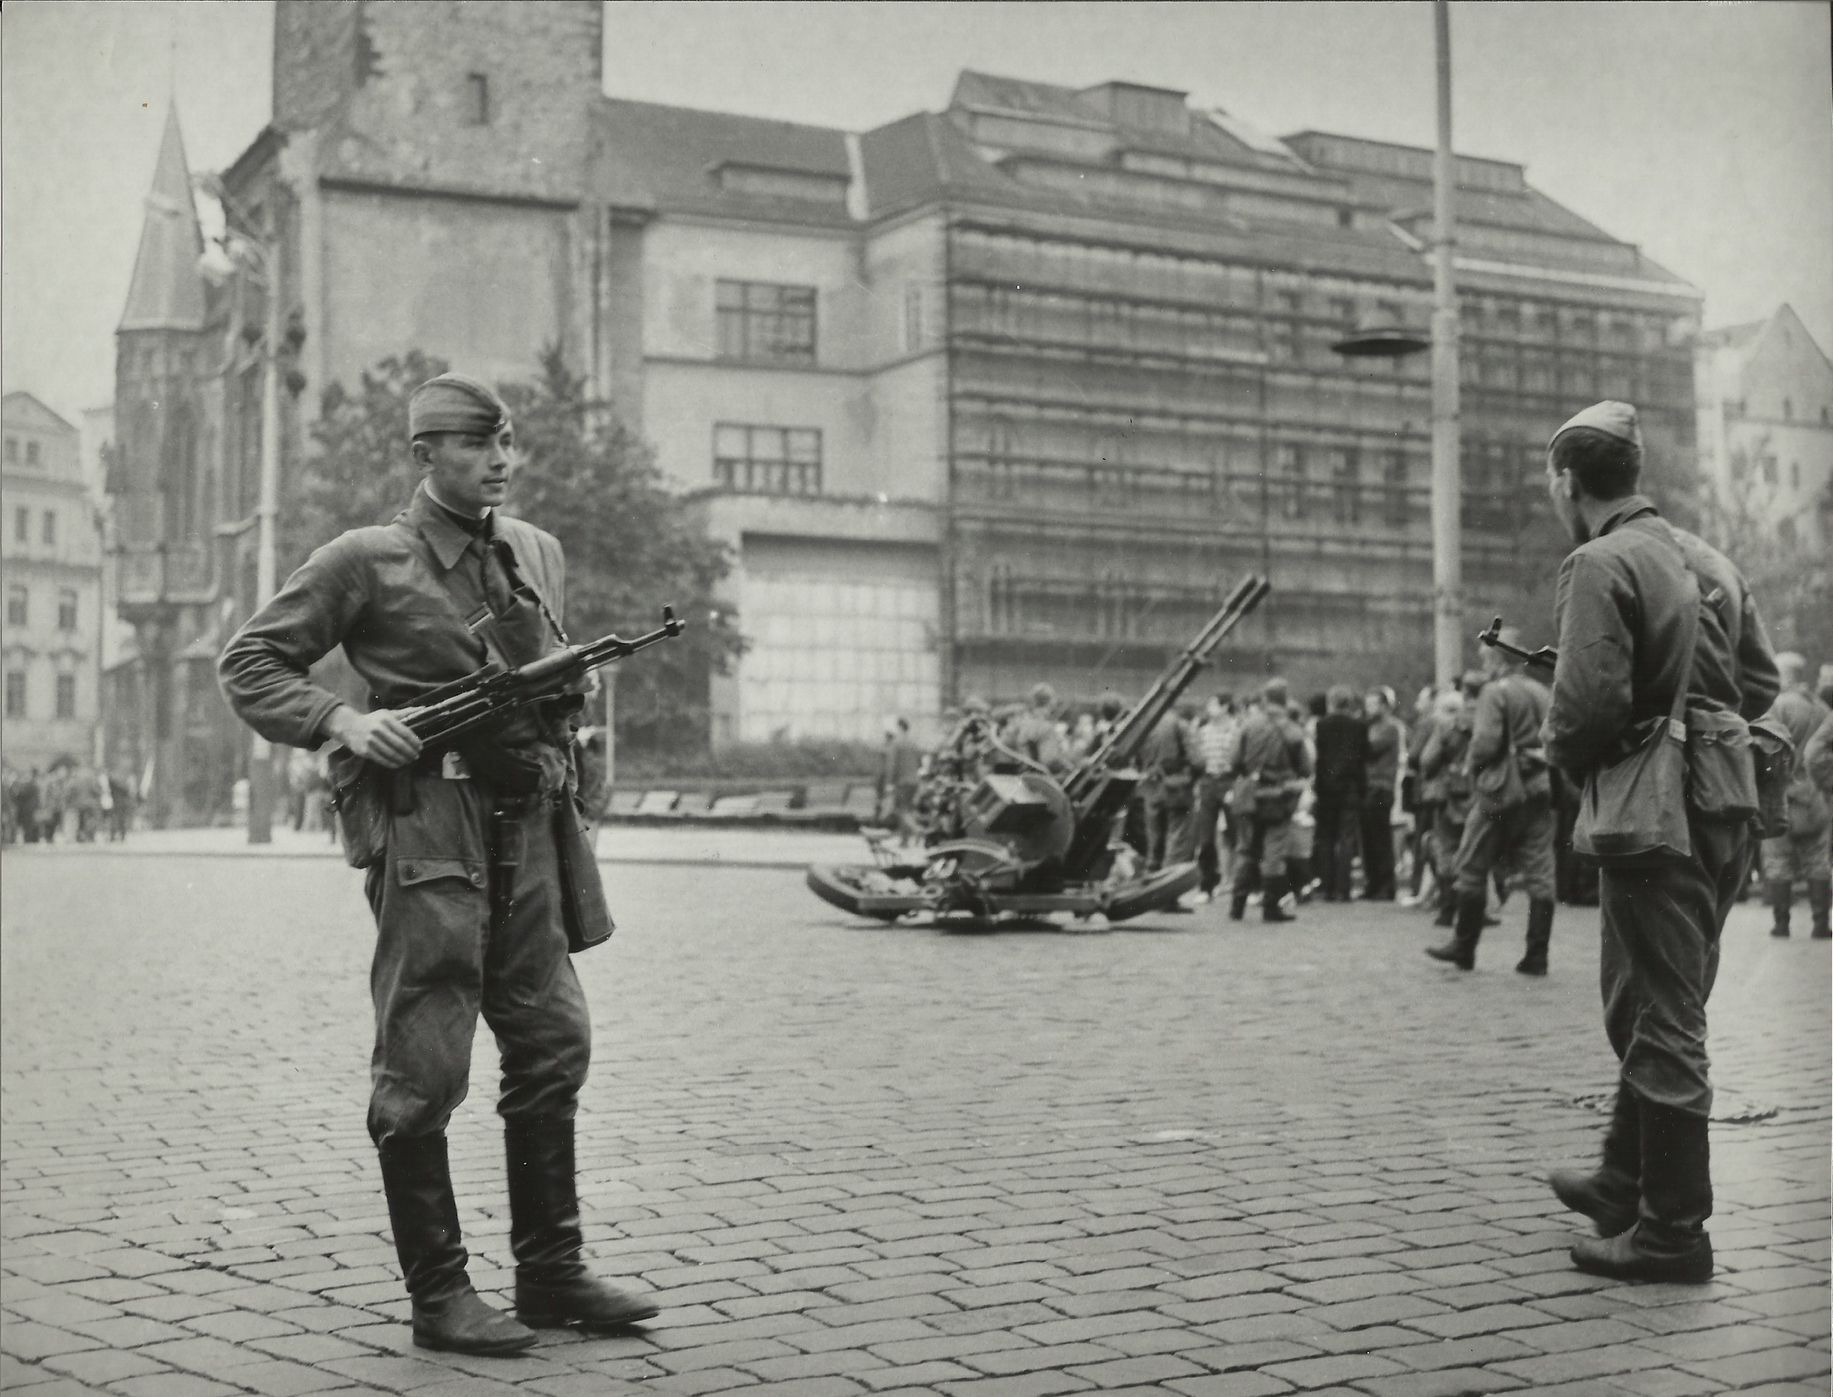 Чехословакия 1935. Операция Дунай Прага 1968. Советские войска в Праге Чехословакия 1968. Прага август 1968. Советские солдаты в Праге 1968.